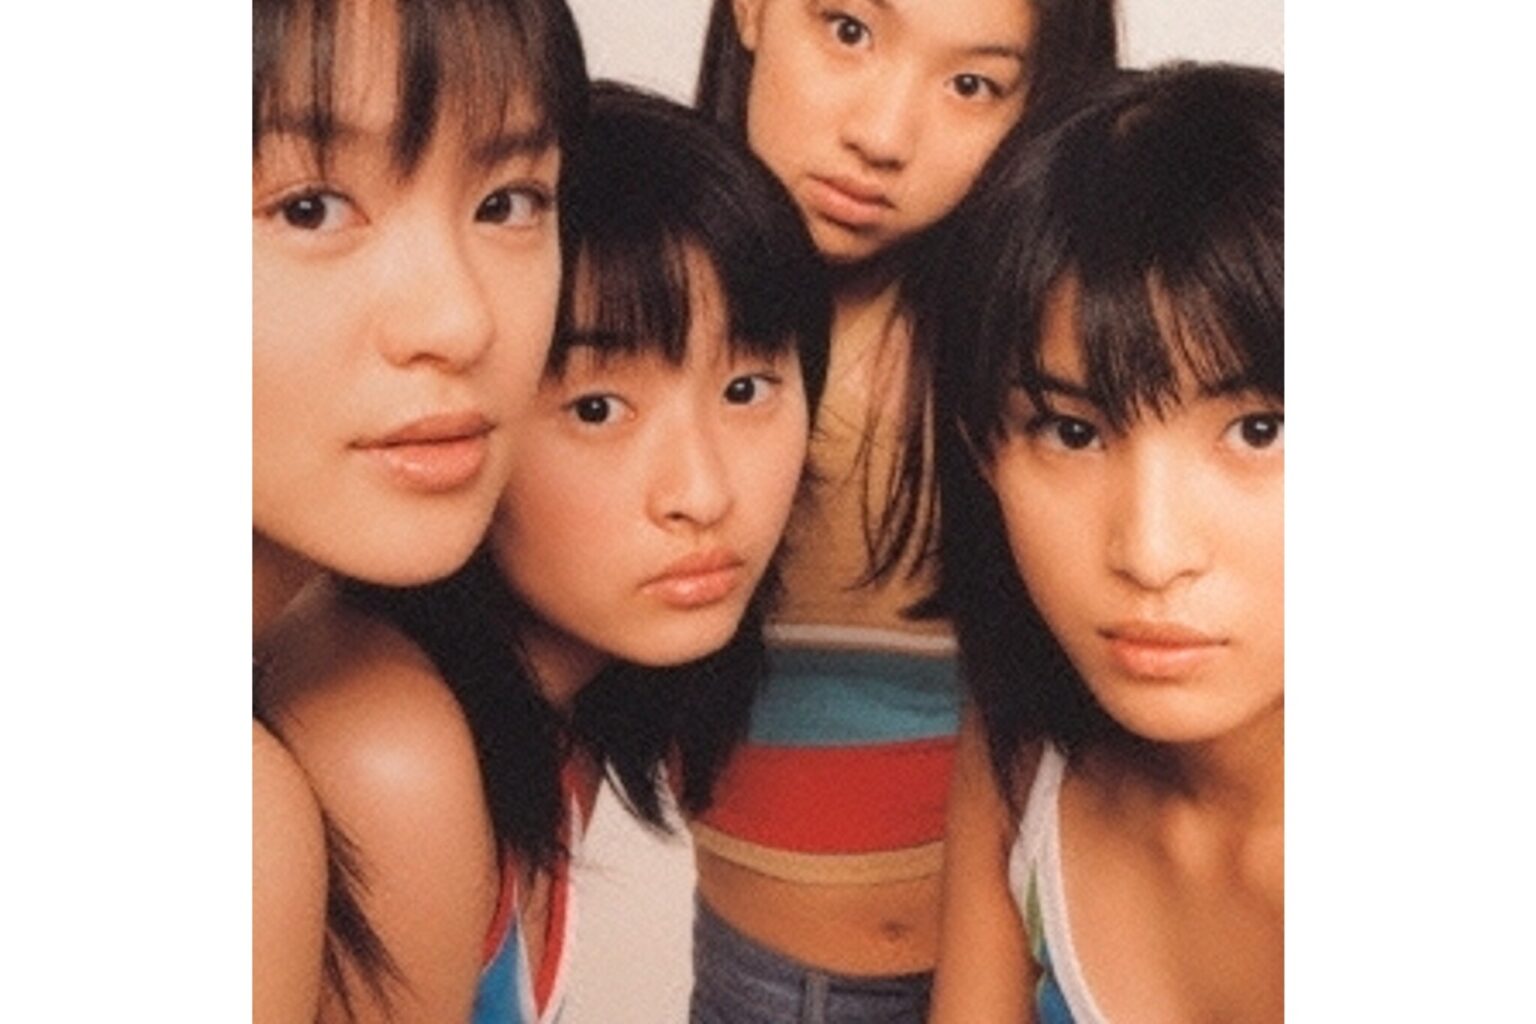 SPEED『Starting Over』／1997年発売のファーストアルバム。累計出荷250万枚の大ヒット。MAX や安室奈美恵に続く「沖縄ブーム」を盛りあげた。